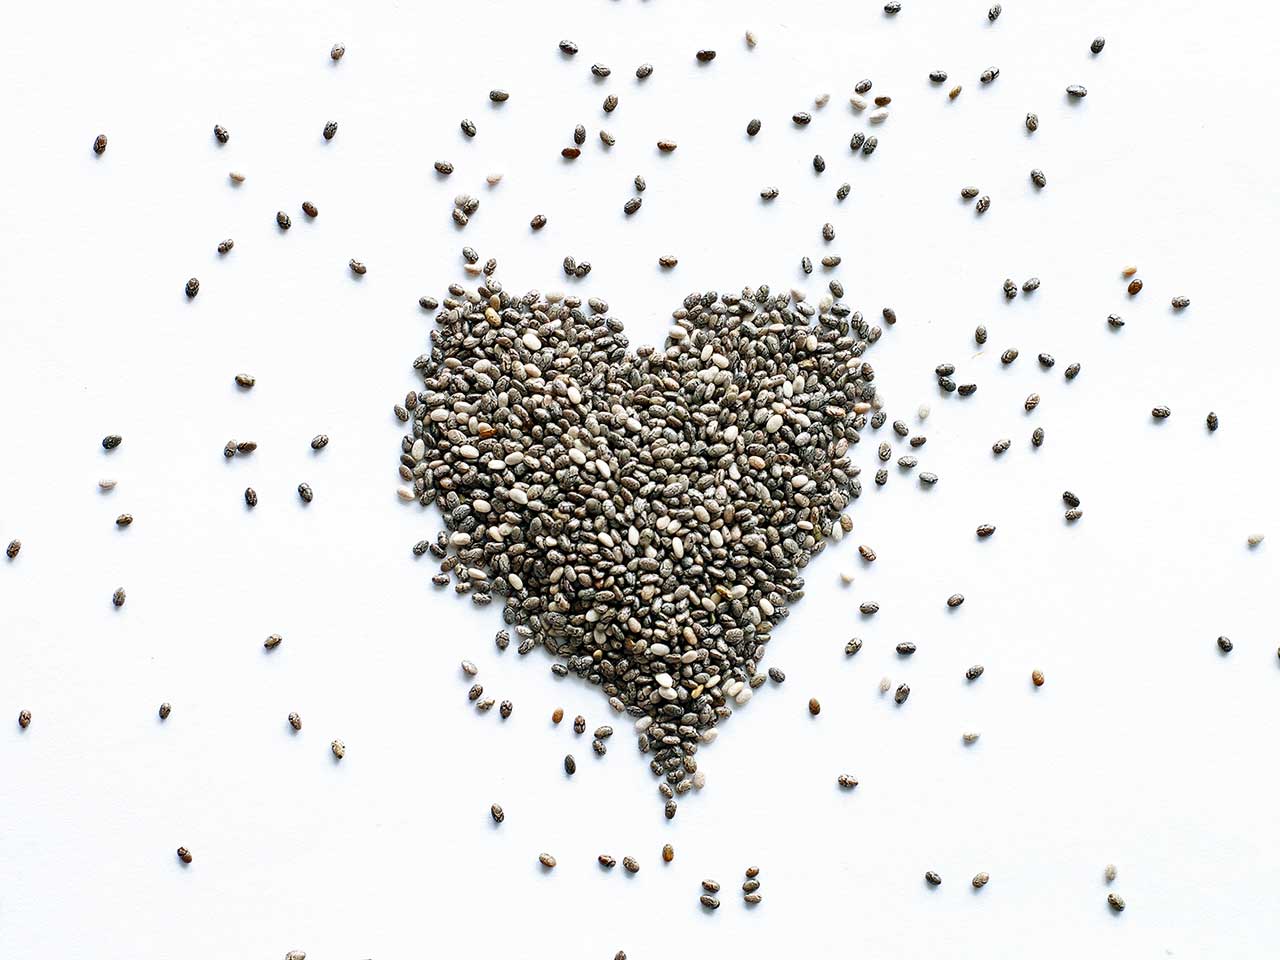 Gli antiossidanti e gli acidi grassi omega-3 di cui sono ricchi i semi di chia proteggono il cuore.